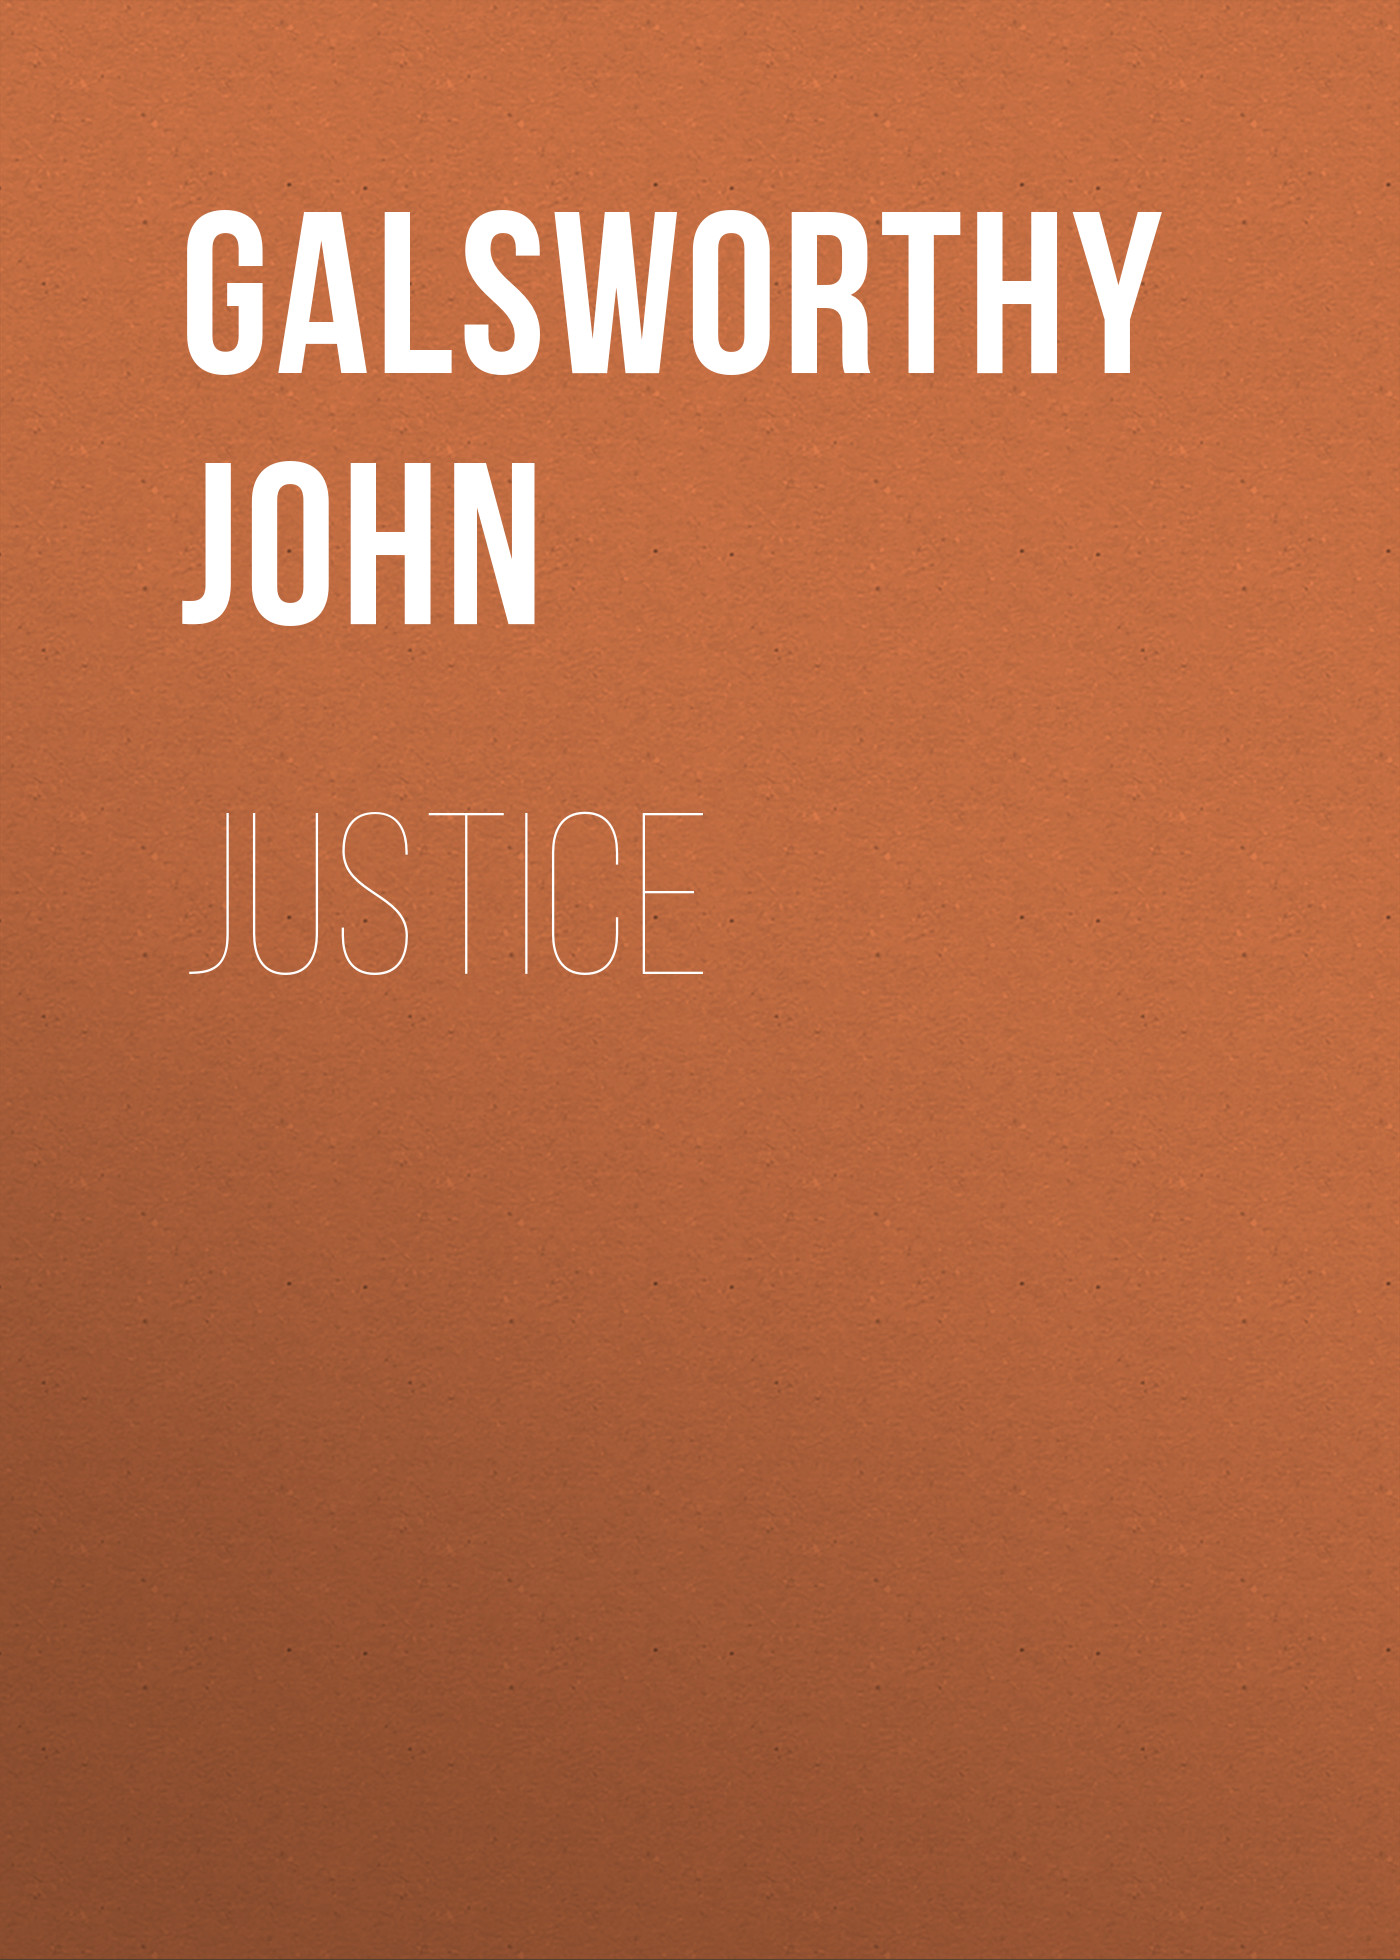 Книга Justice из серии , созданная John Galsworthy, может относится к жанру Зарубежная старинная литература, Зарубежная классика. Стоимость электронной книги Justice с идентификатором 25203063 составляет 0 руб.